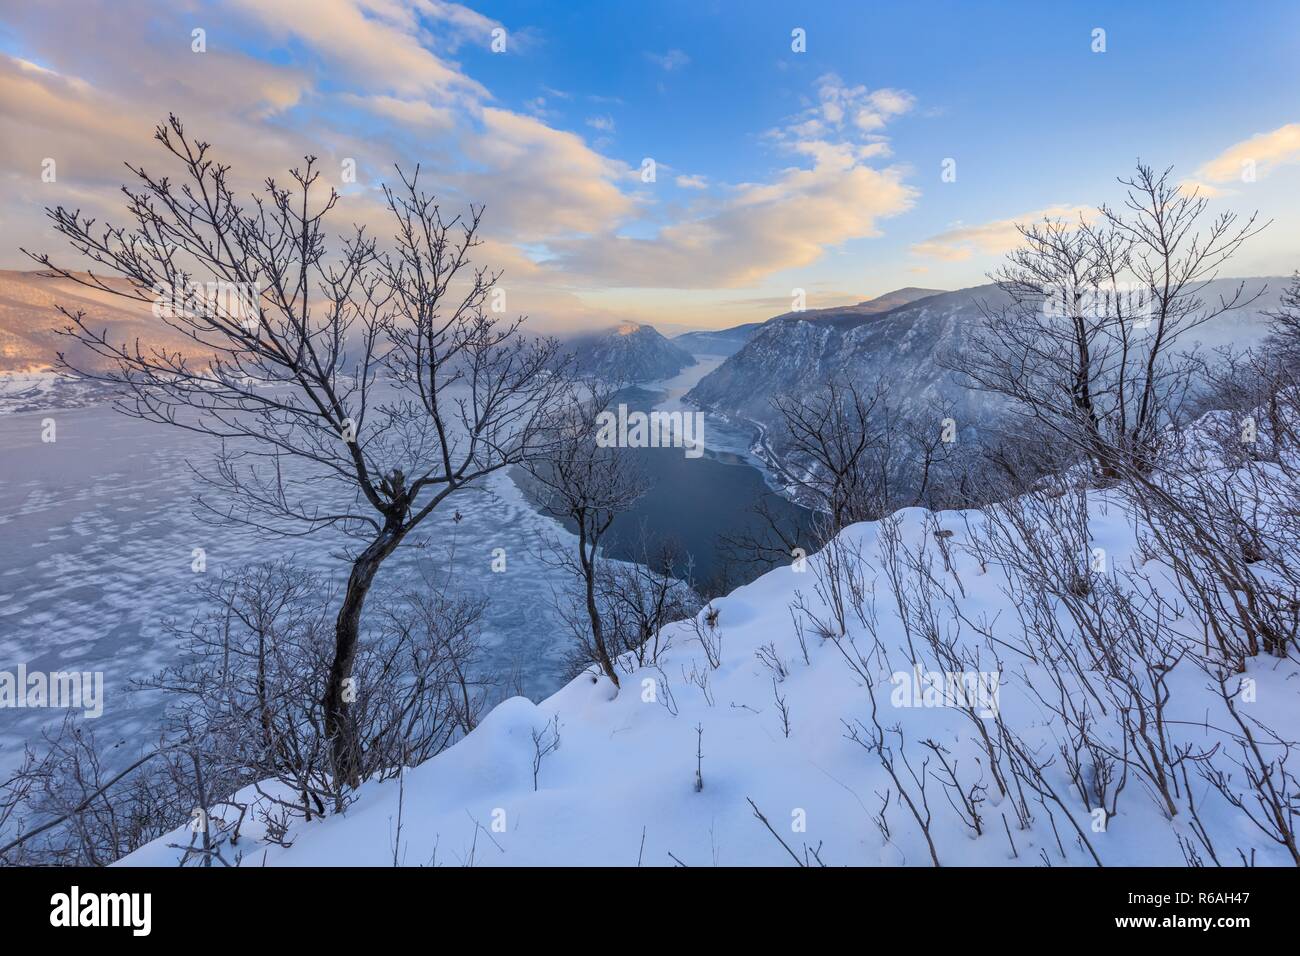 Danube Gorges in winter. Romania Stock Photo